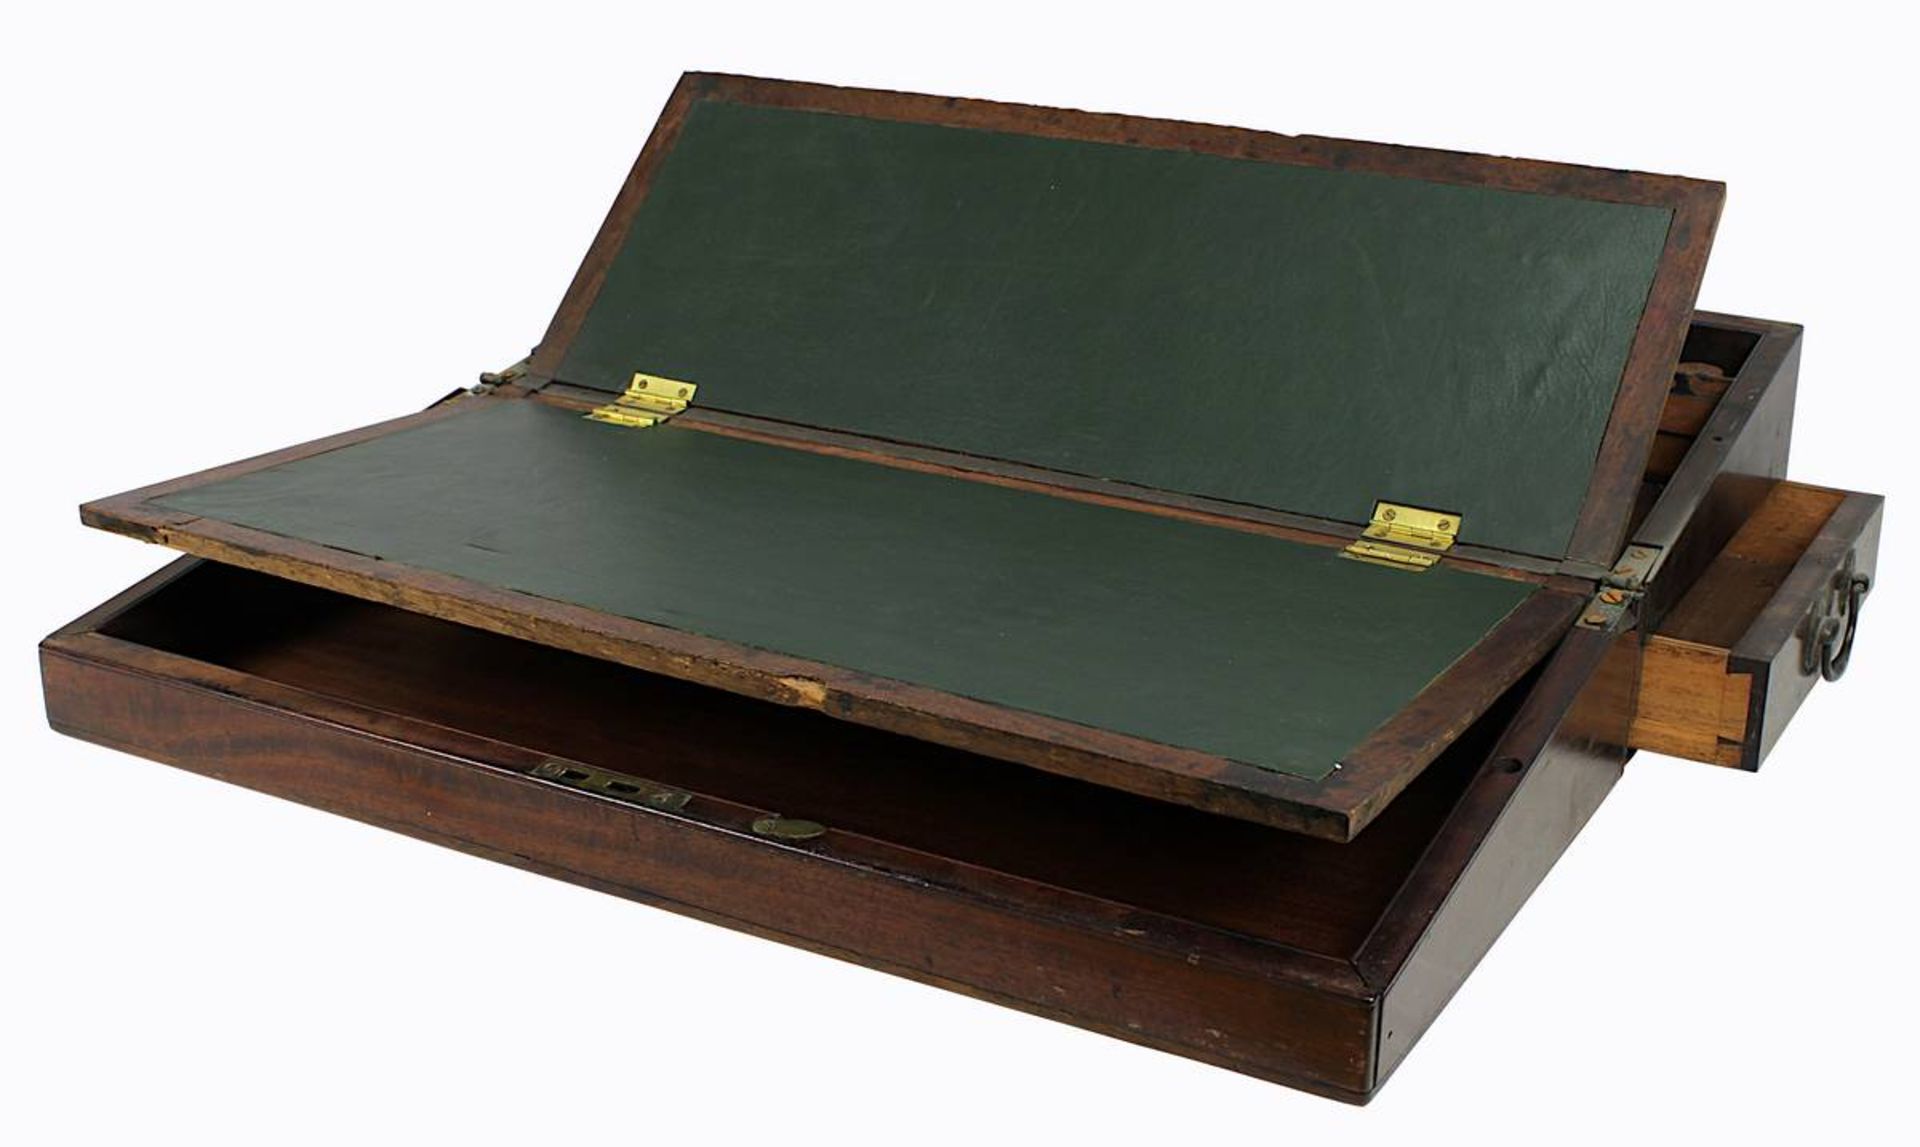 Reise-Schreibkasten, England 2. H. 19. Jh., rechteckige Form, Mahagoni, mit seitlichem Schubfach, - Bild 2 aus 3